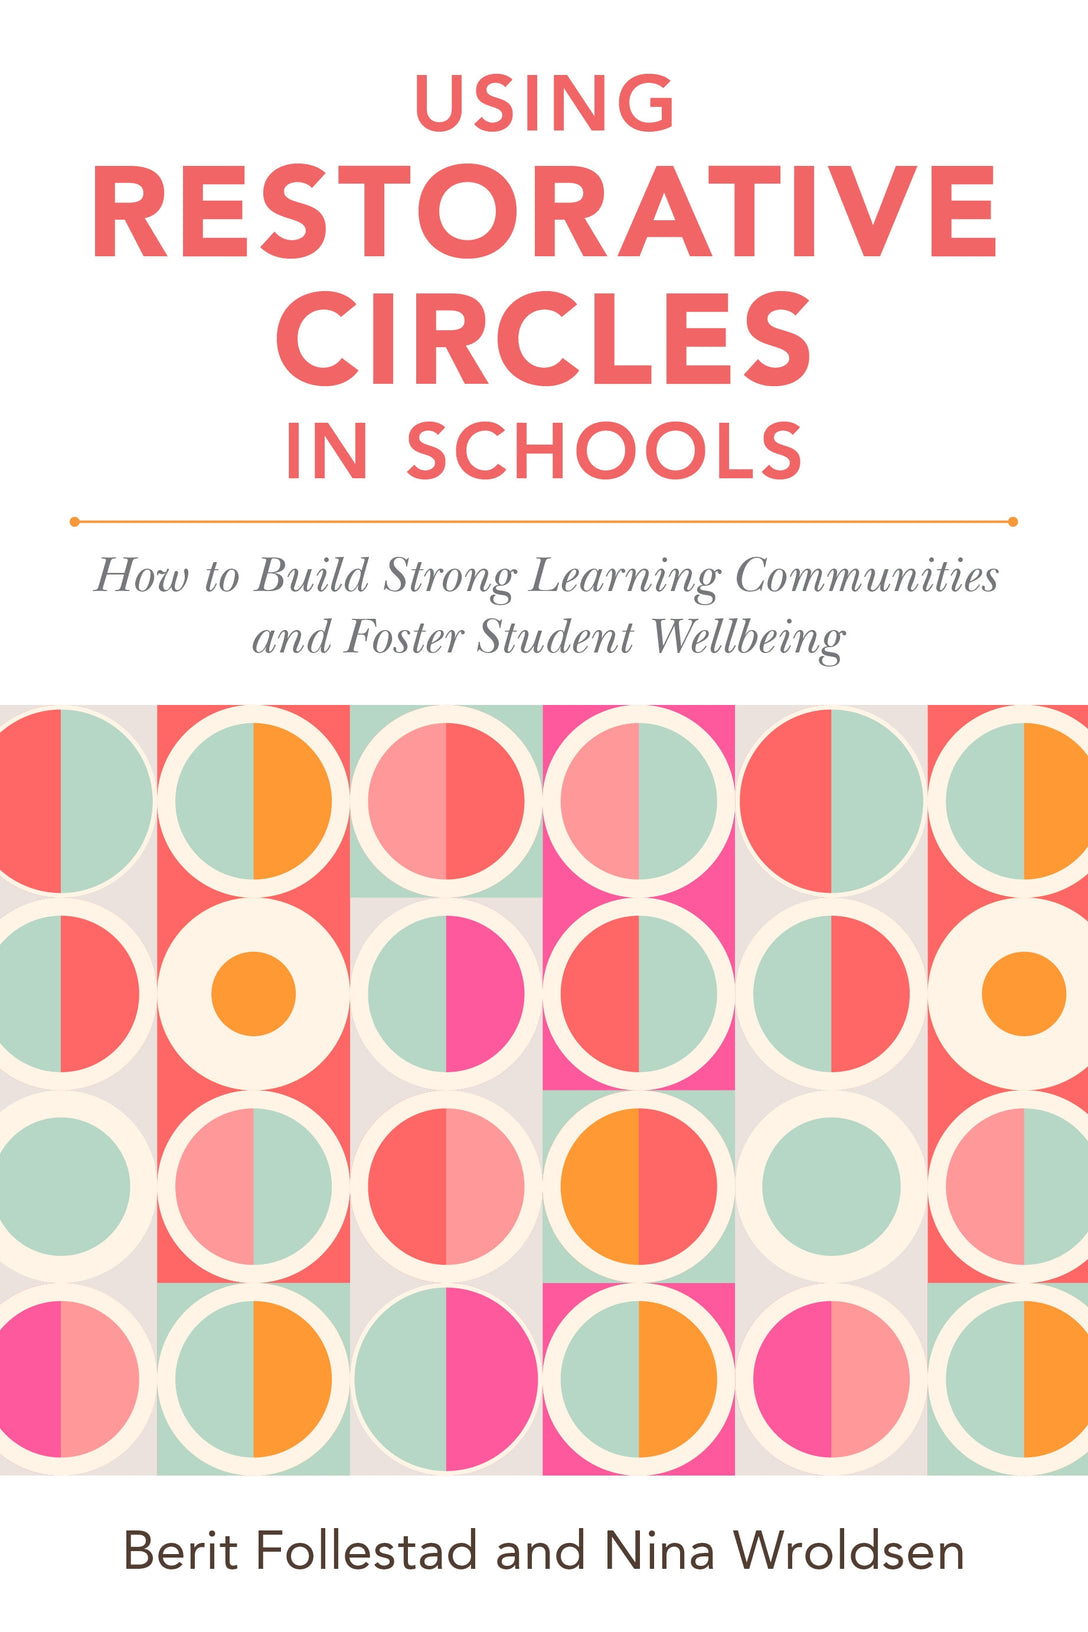 Using Restorative Circles in Schools by Nina Wroldsen, Berit Follestad